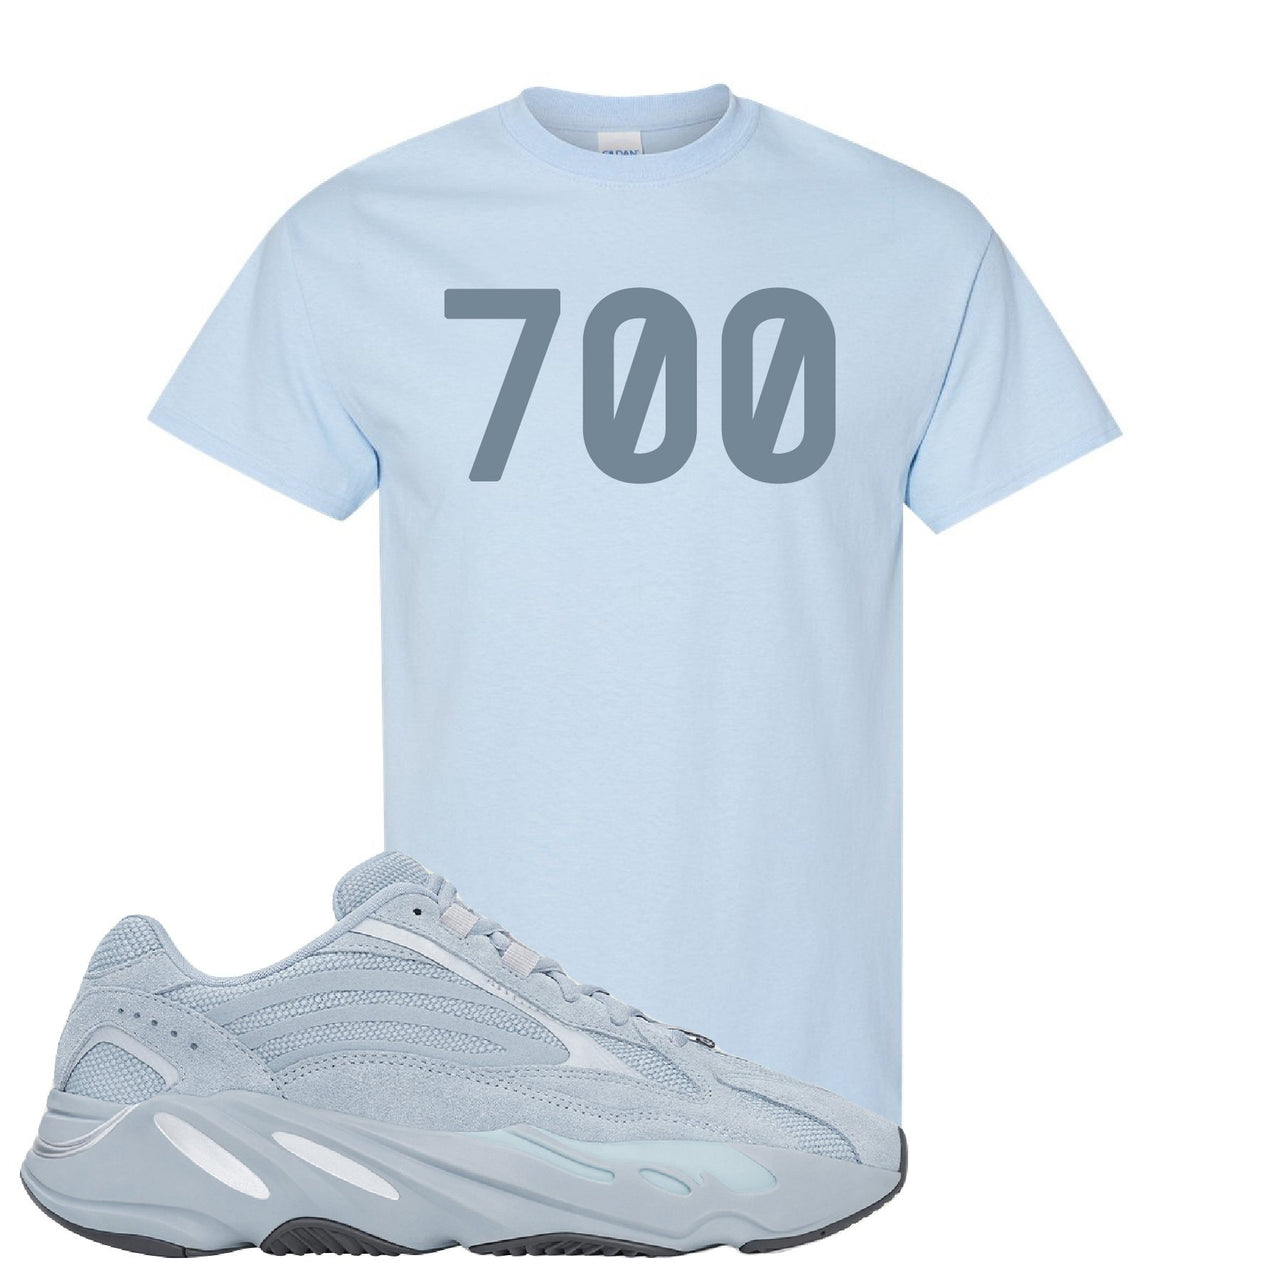 Yeezy Boost 700 V2 Hospital Blue 700 Sneaker Matching Light Blue T-Shirt